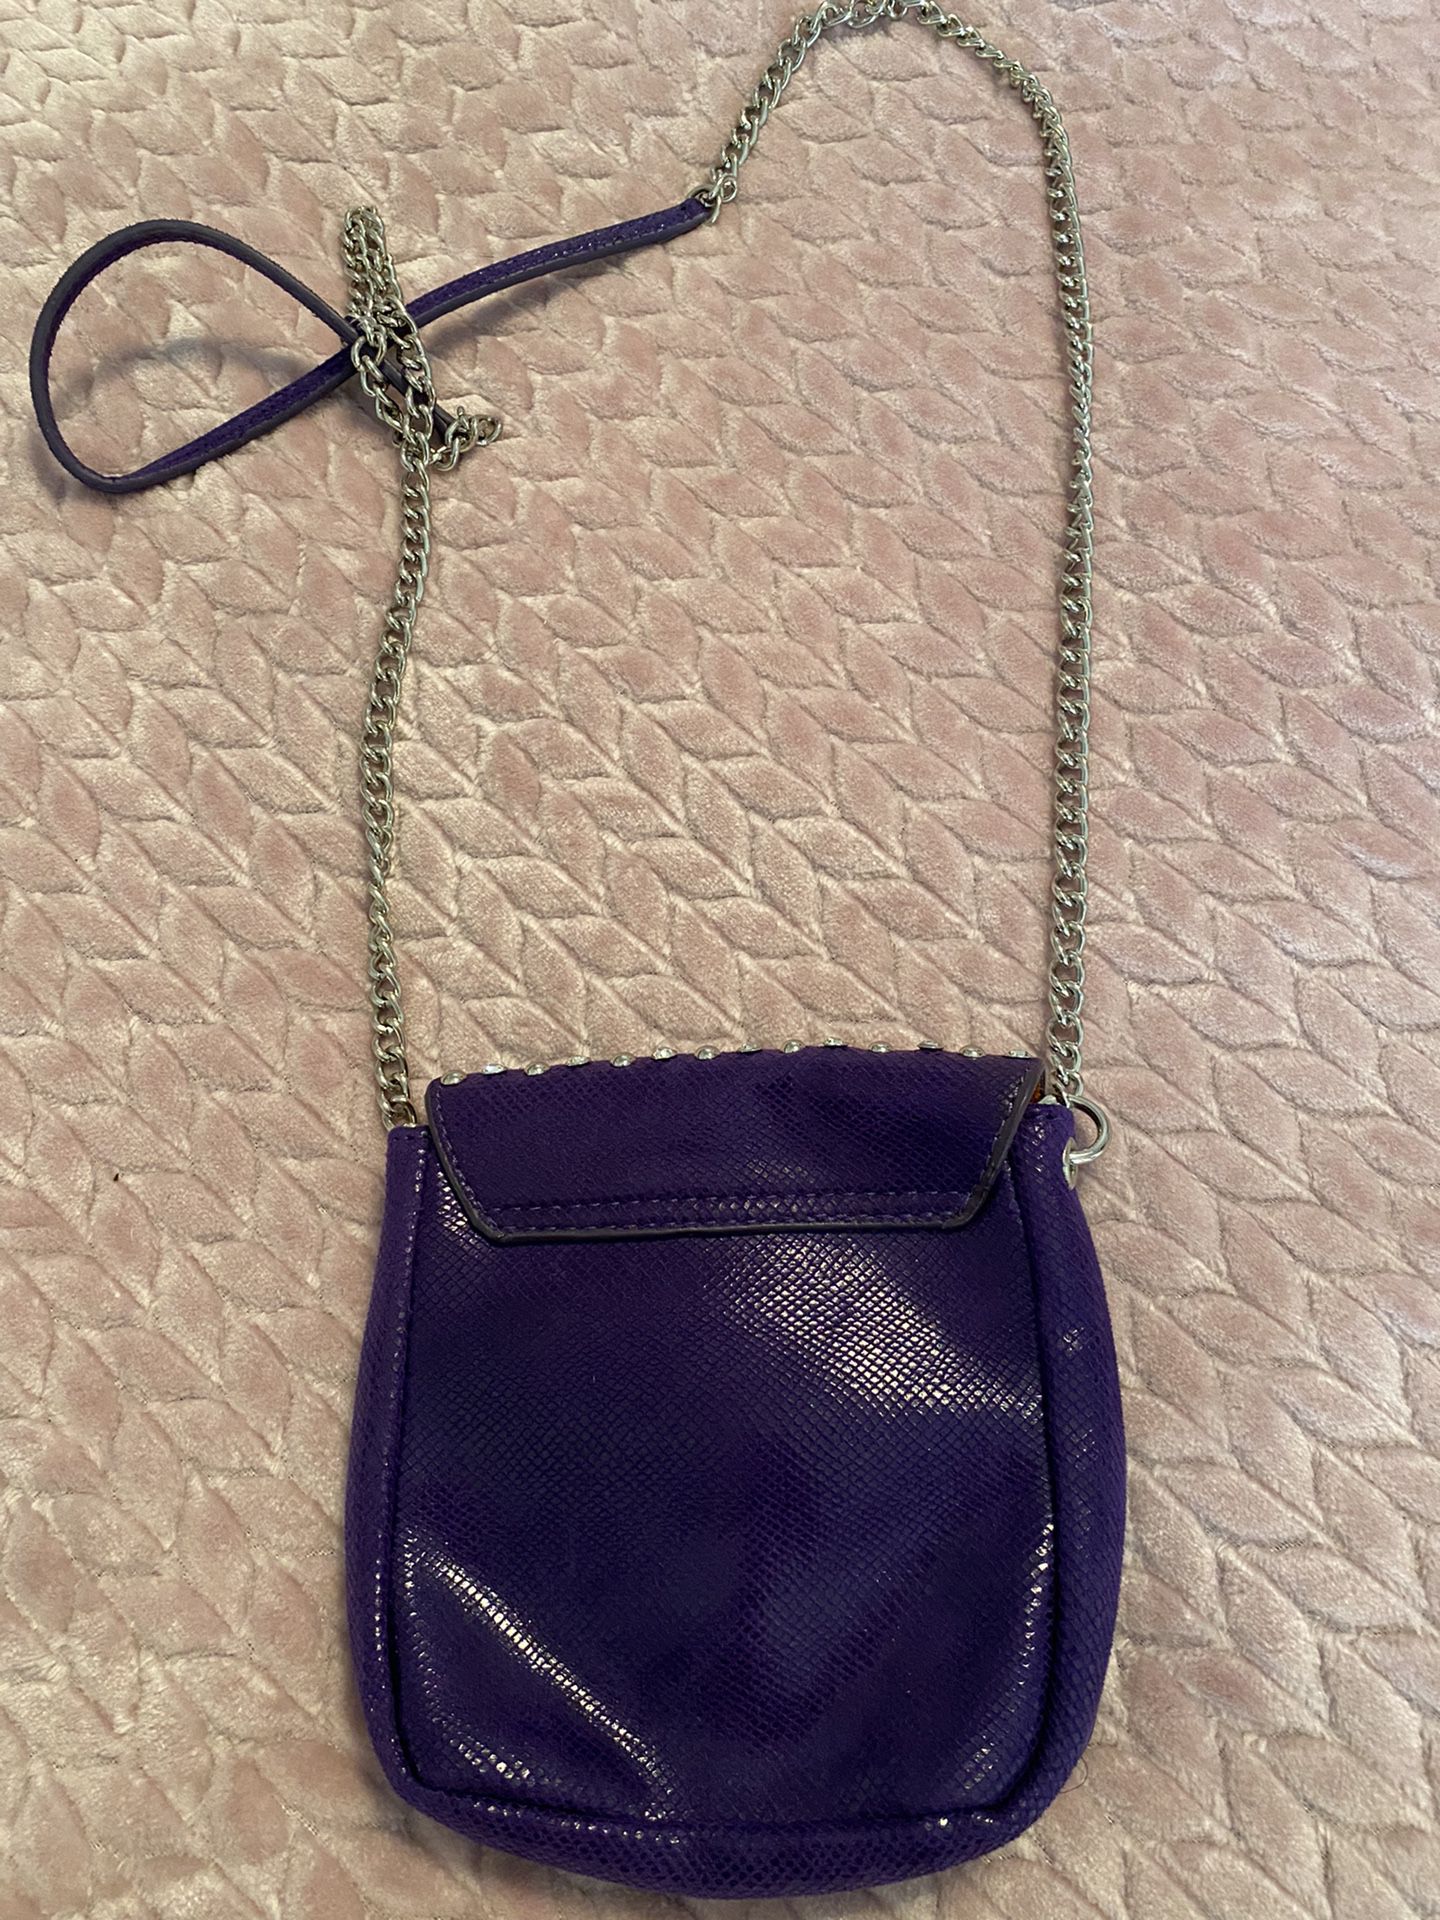 Charming Charlie Purple Rhinestone Bag